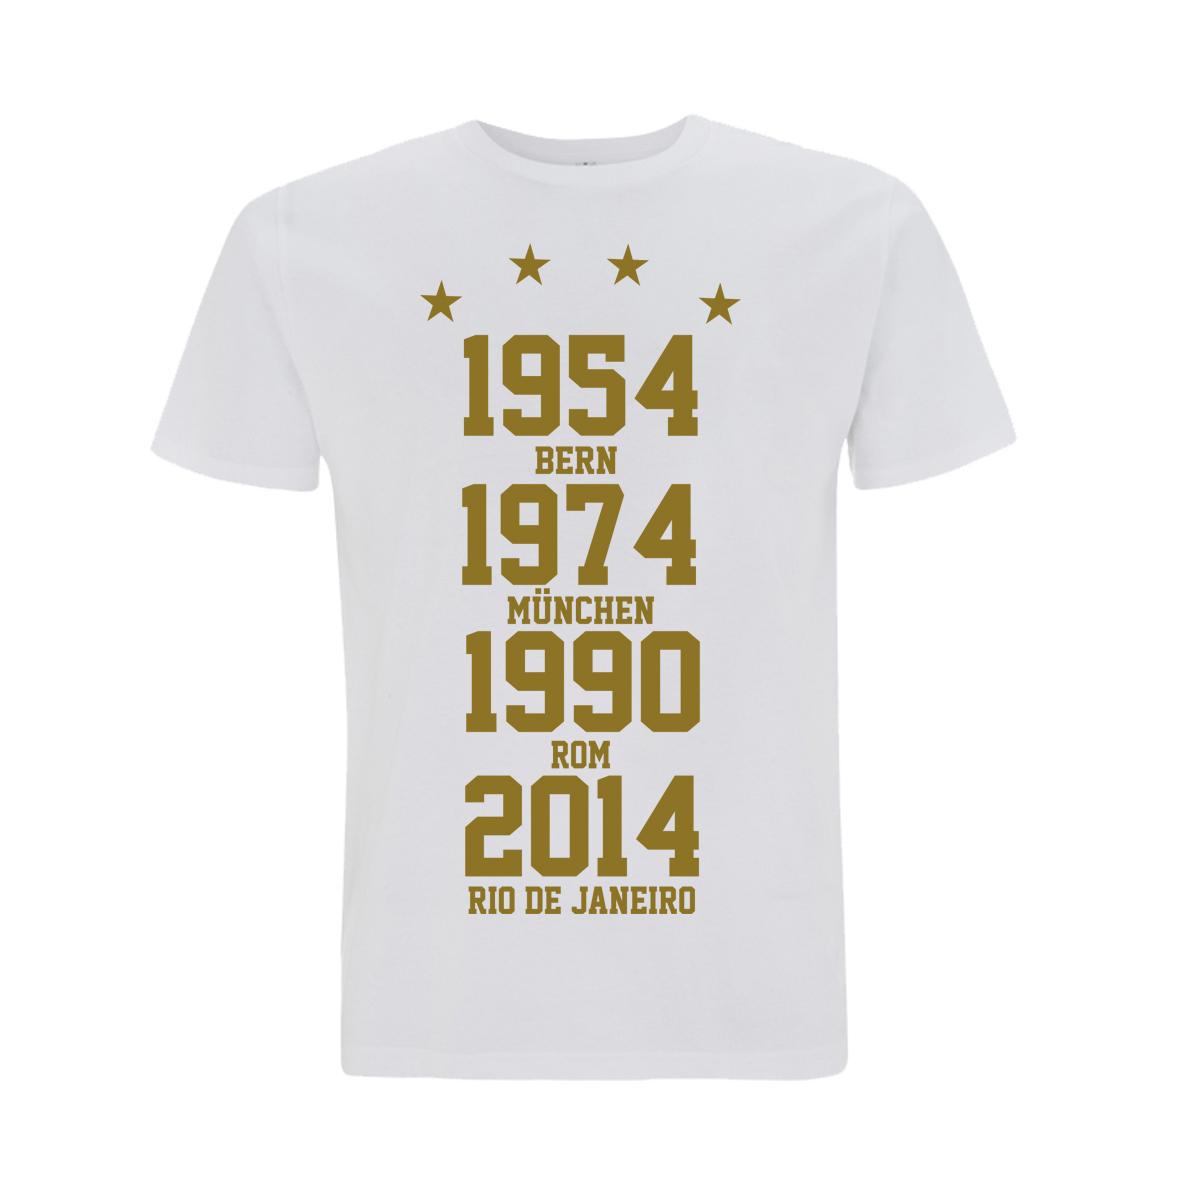 Weltmeister 54-74-90-14 Männer T-Shirt weiß-gold